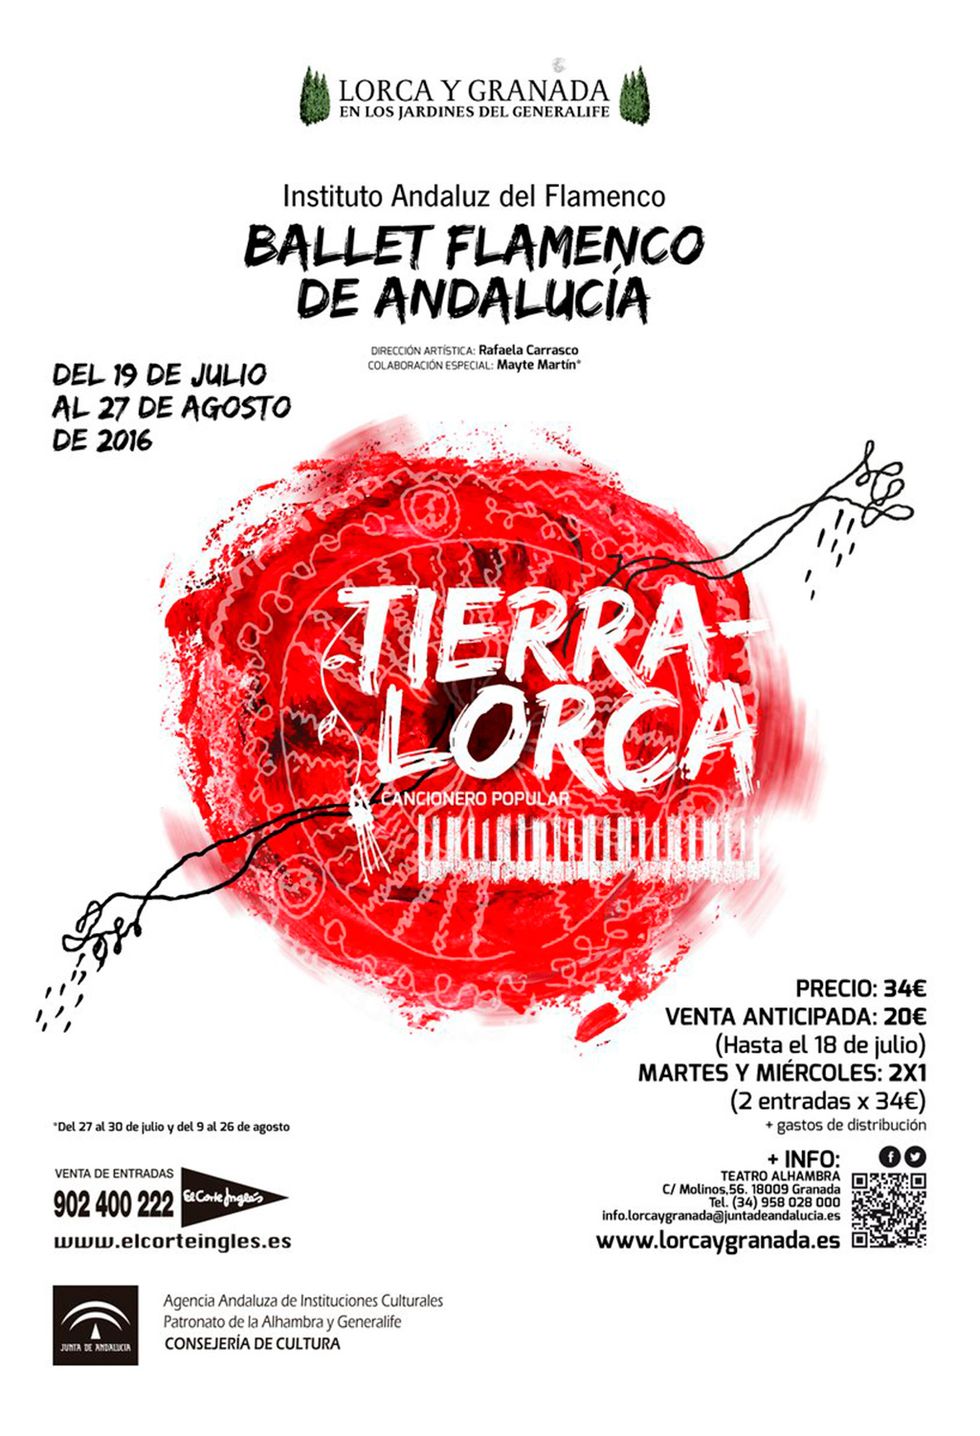 <p>Hasta el 27 de agosto, el Ballet Flamenco de Andalucía representa <a href="http://www.juntadeandalucia.es/cultura/bfa/tierra-lorca-cancionero-popular/" target="_blank"><strong>‘Tierra-Lorca. Cancionero popular’</strong></a>en los Jardines del Generalife y otros espacios emblemáticos de la ciudad. La propuesta está inspirada en el ‘Cancionero popular’ de Federico García-Lorca y, con la coreografía preparada por Rafaela Carrasco, quiere transmitir el sentir del granadino más universal y las hondas raíces del folklore español con alguno de los sones más espectaculares del flamenco. Entradas: 34 euros.</p><p>&nbsp;</p>